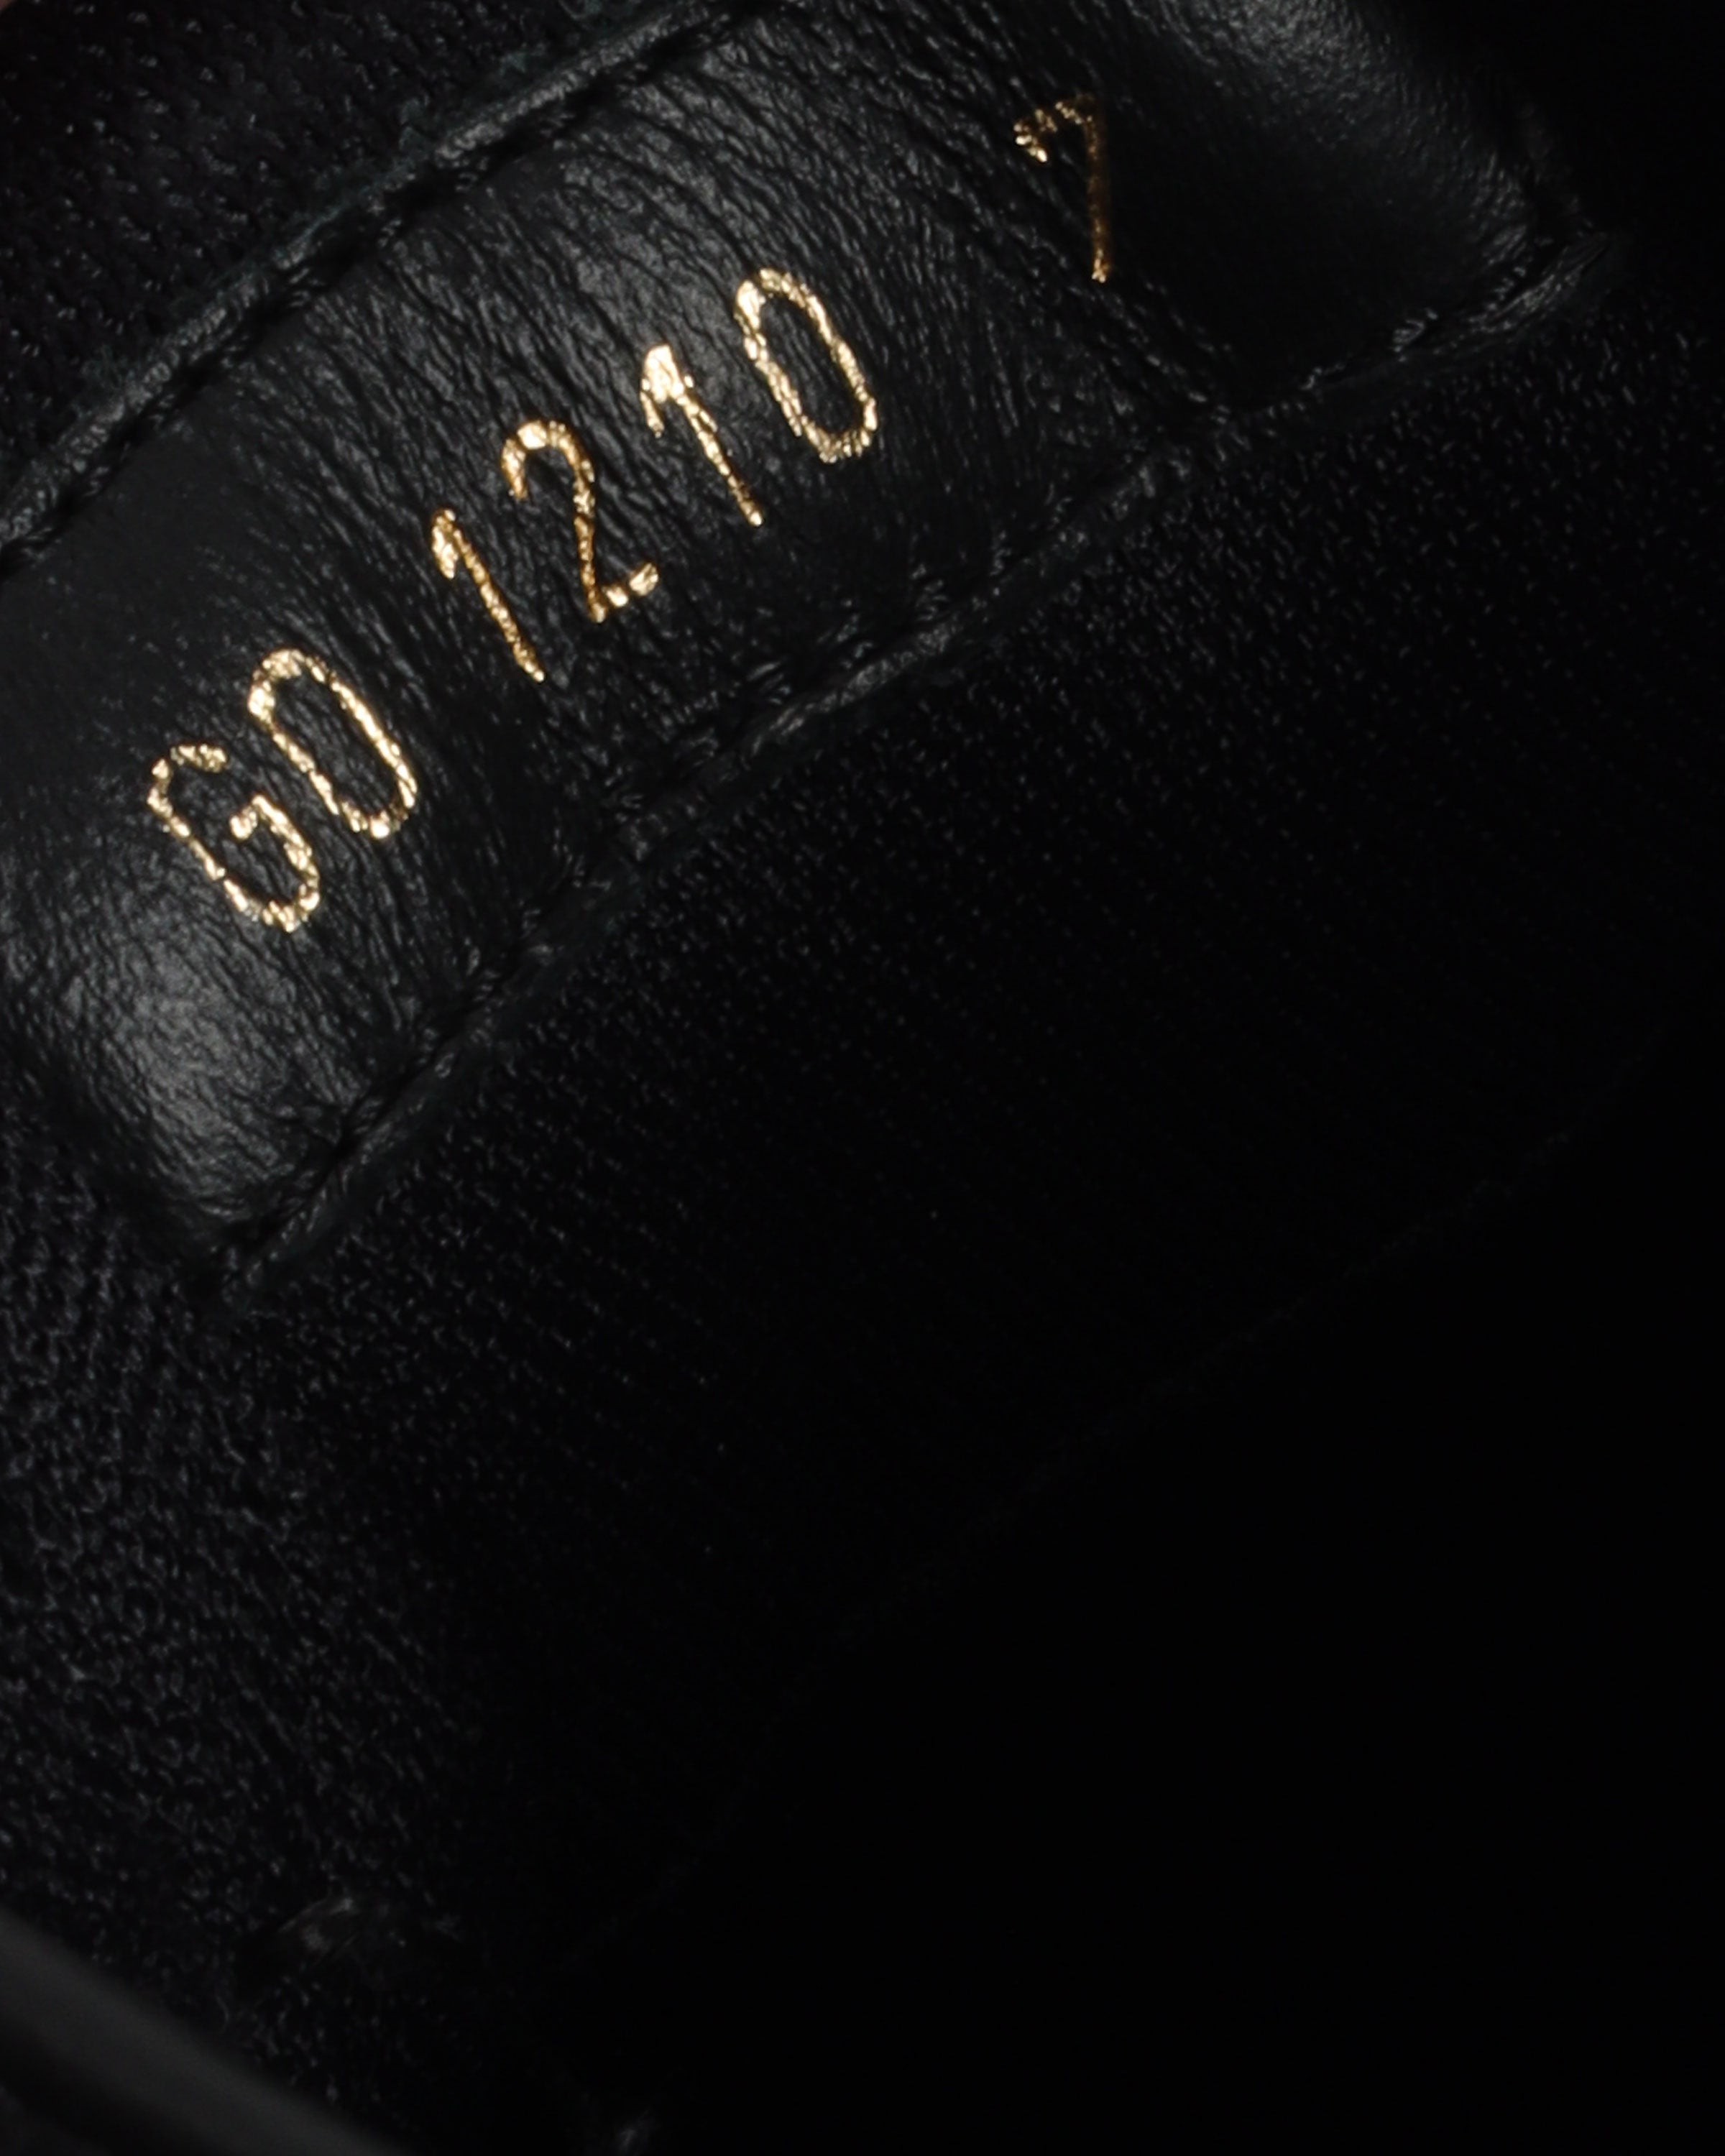 Louis Vuitton x Lucien Clark A View Sneaker Black Men's - 1A8J2V - US